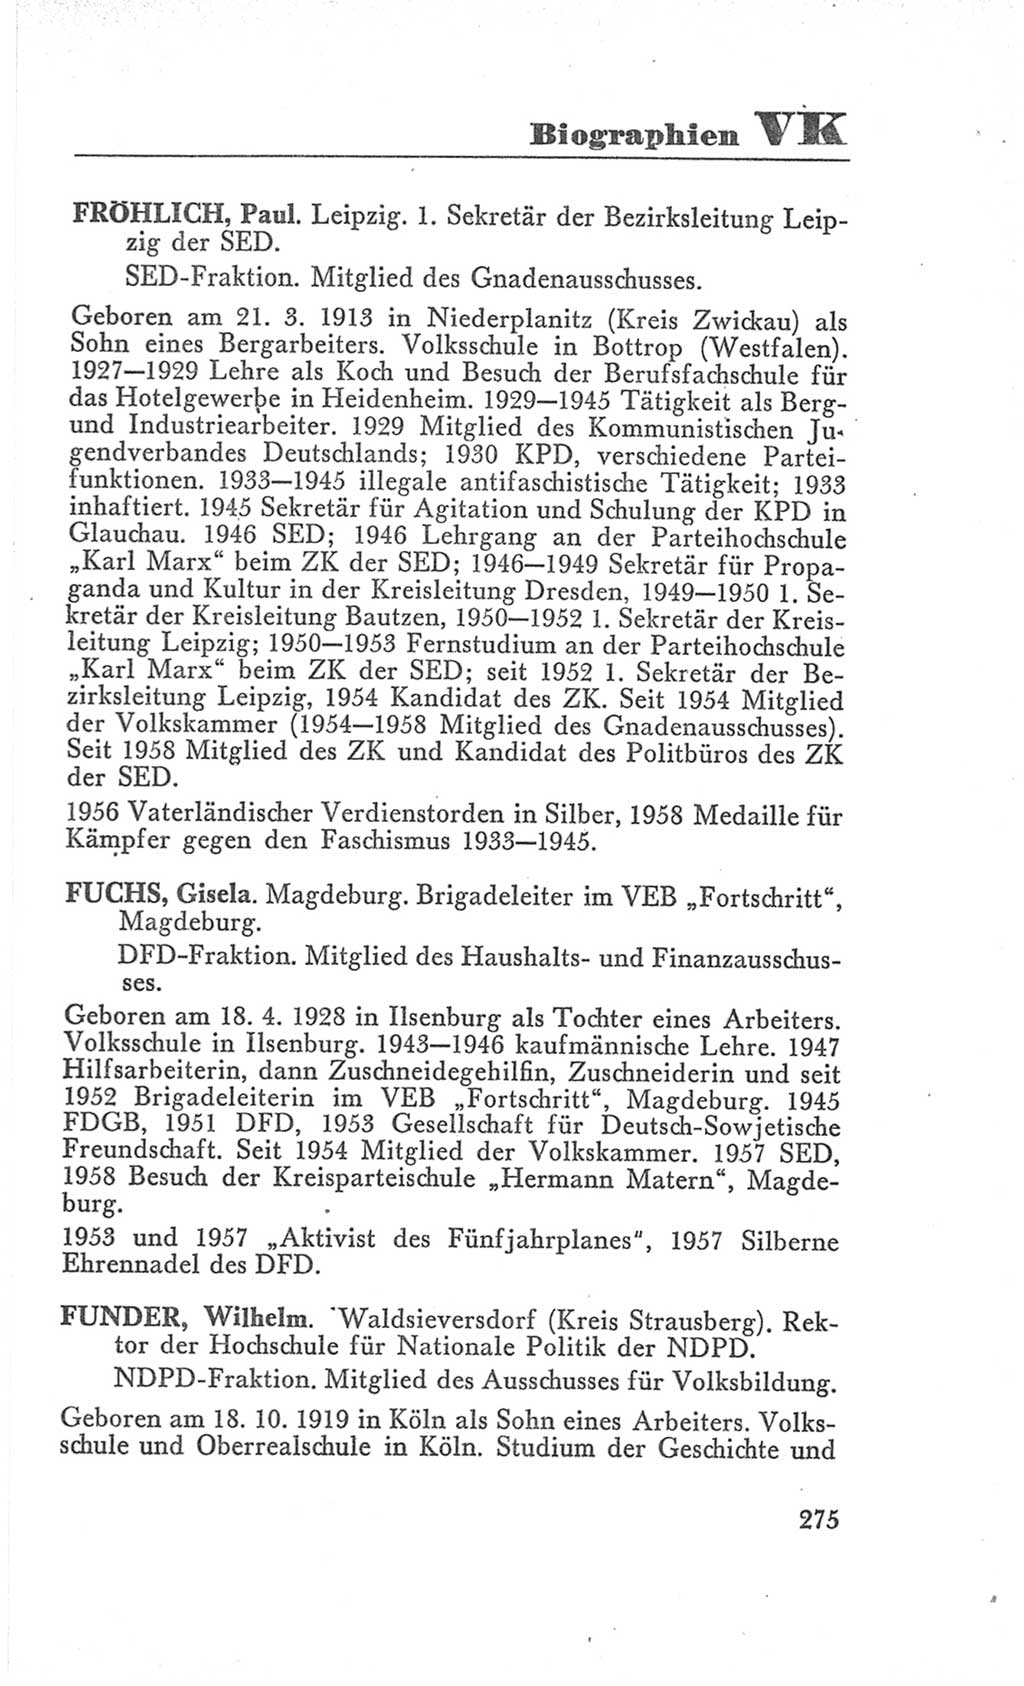 Handbuch der Volkskammer (VK) der Deutschen Demokratischen Republik (DDR), 3. Wahlperiode 1958-1963, Seite 275 (Hdb. VK. DDR 3. WP. 1958-1963, S. 275)